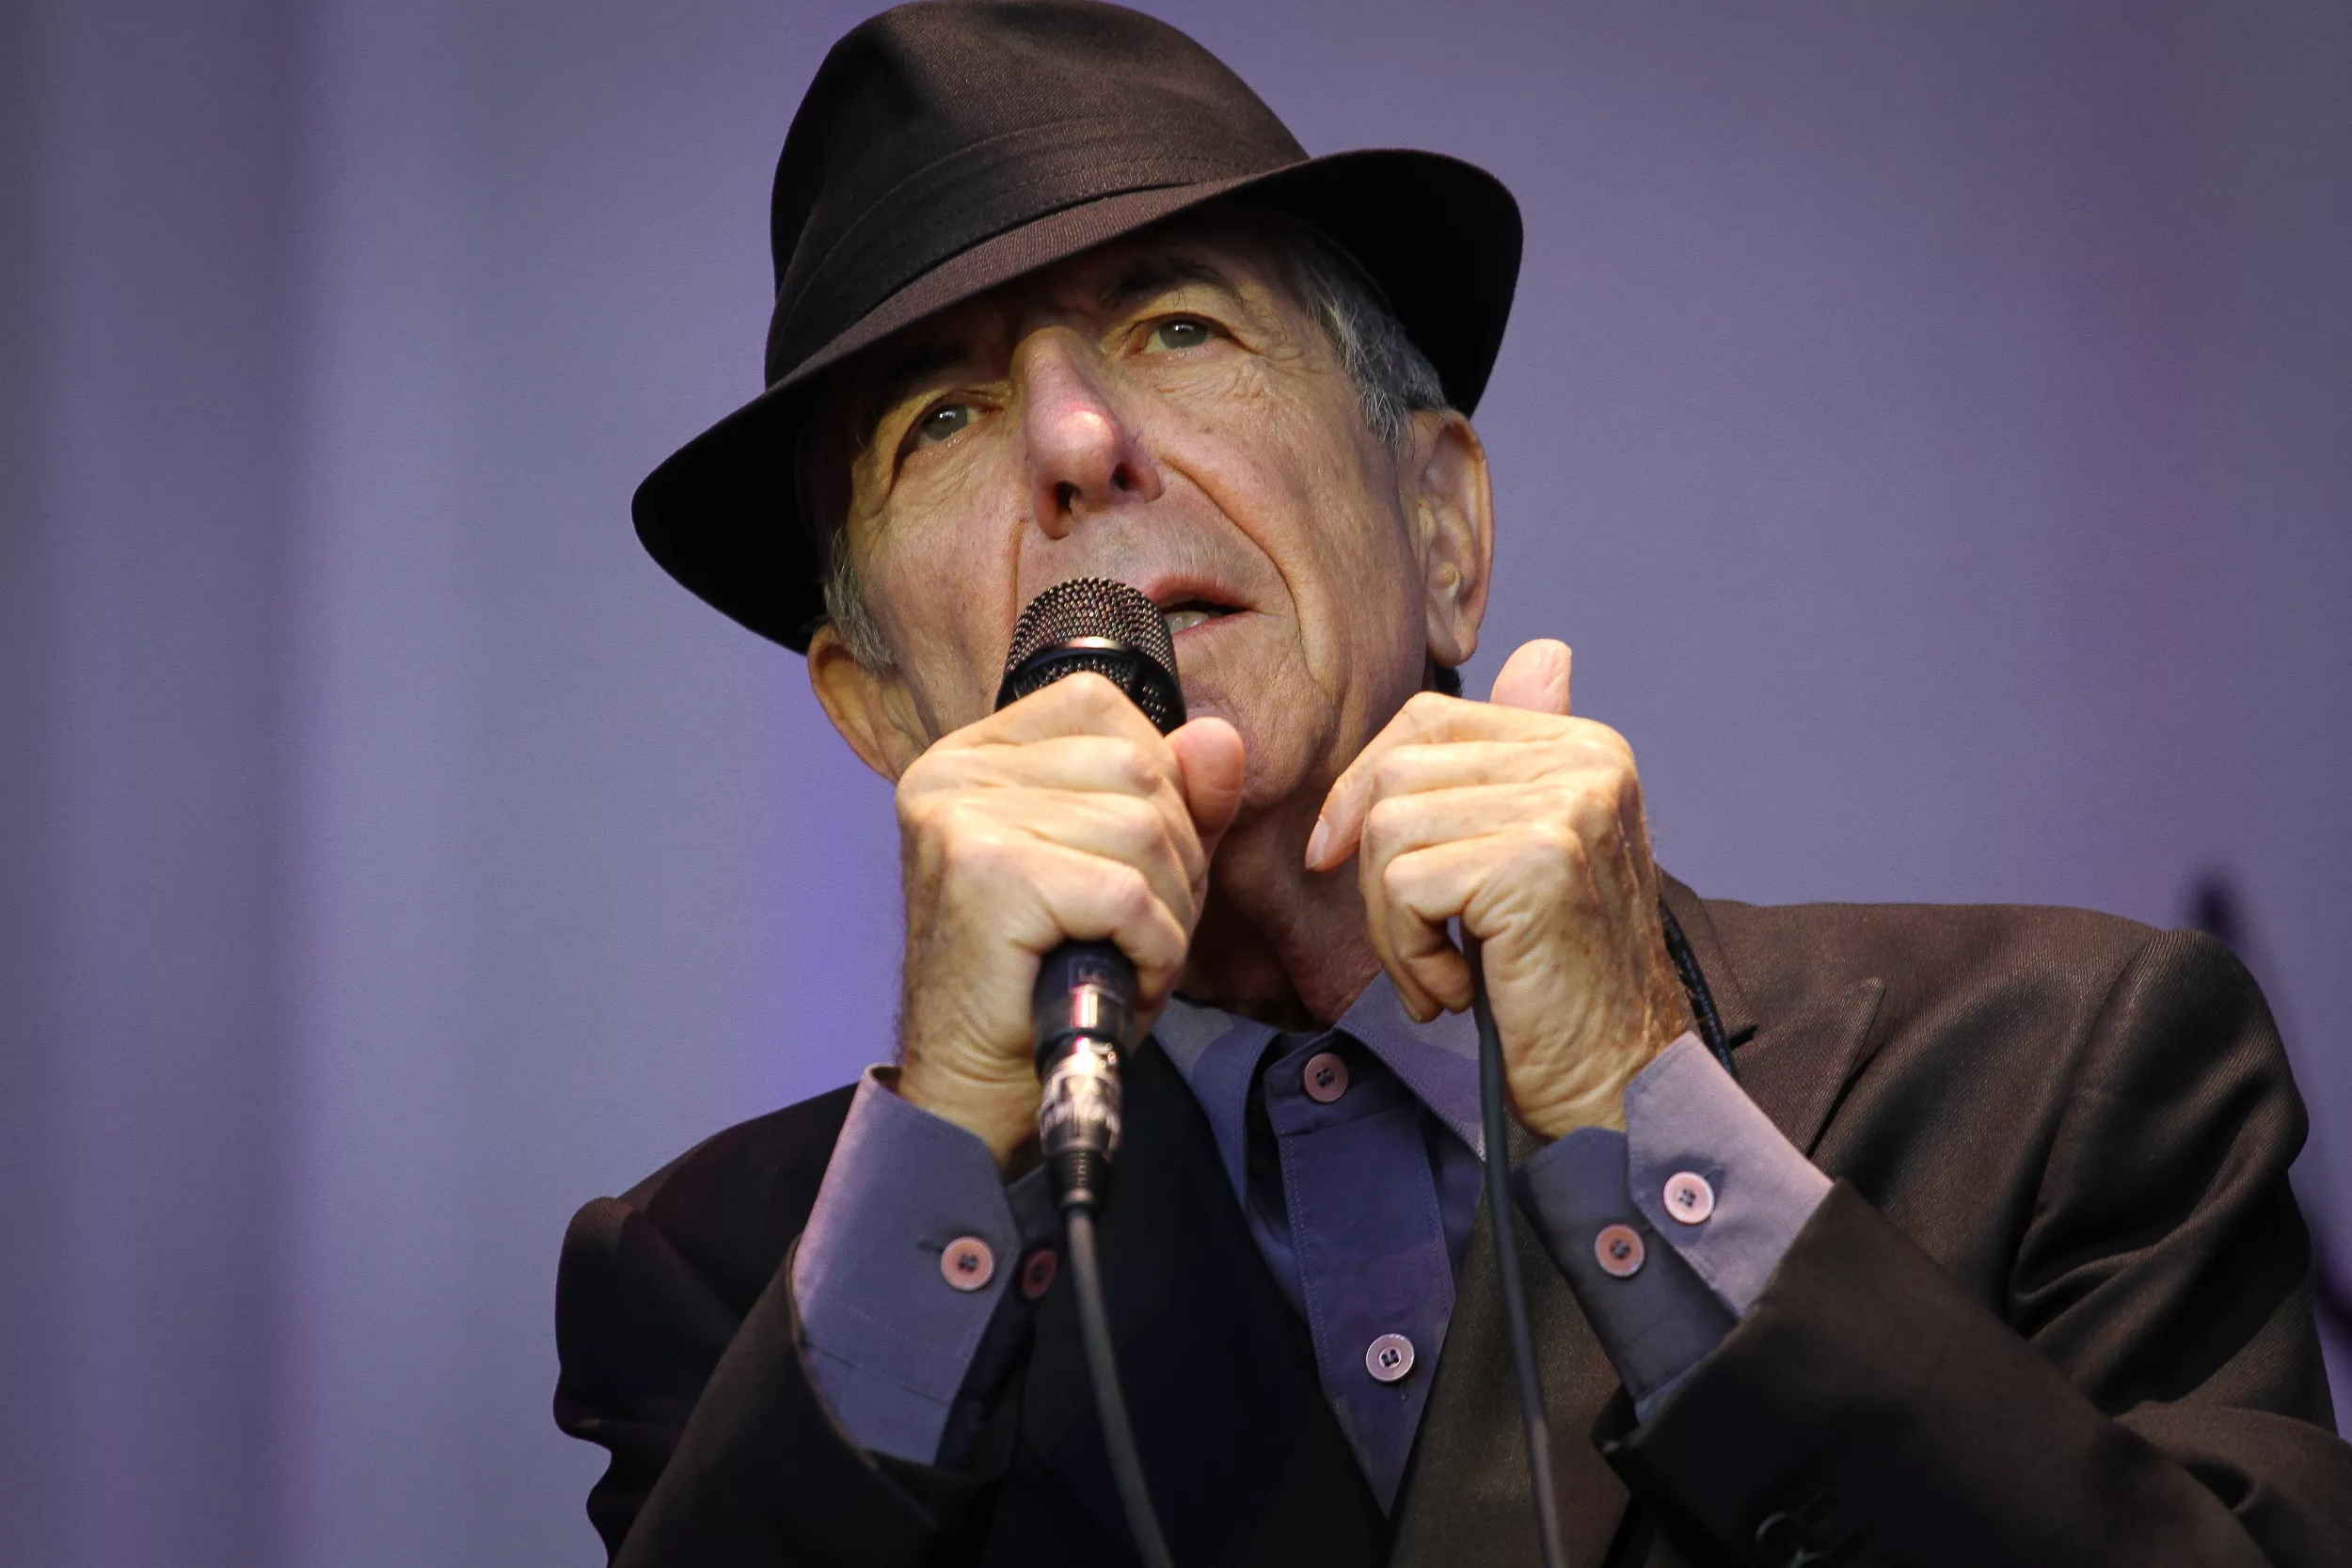 Nekrolog: So Long, LC - Leonard Cohen er død, 82 år gammel